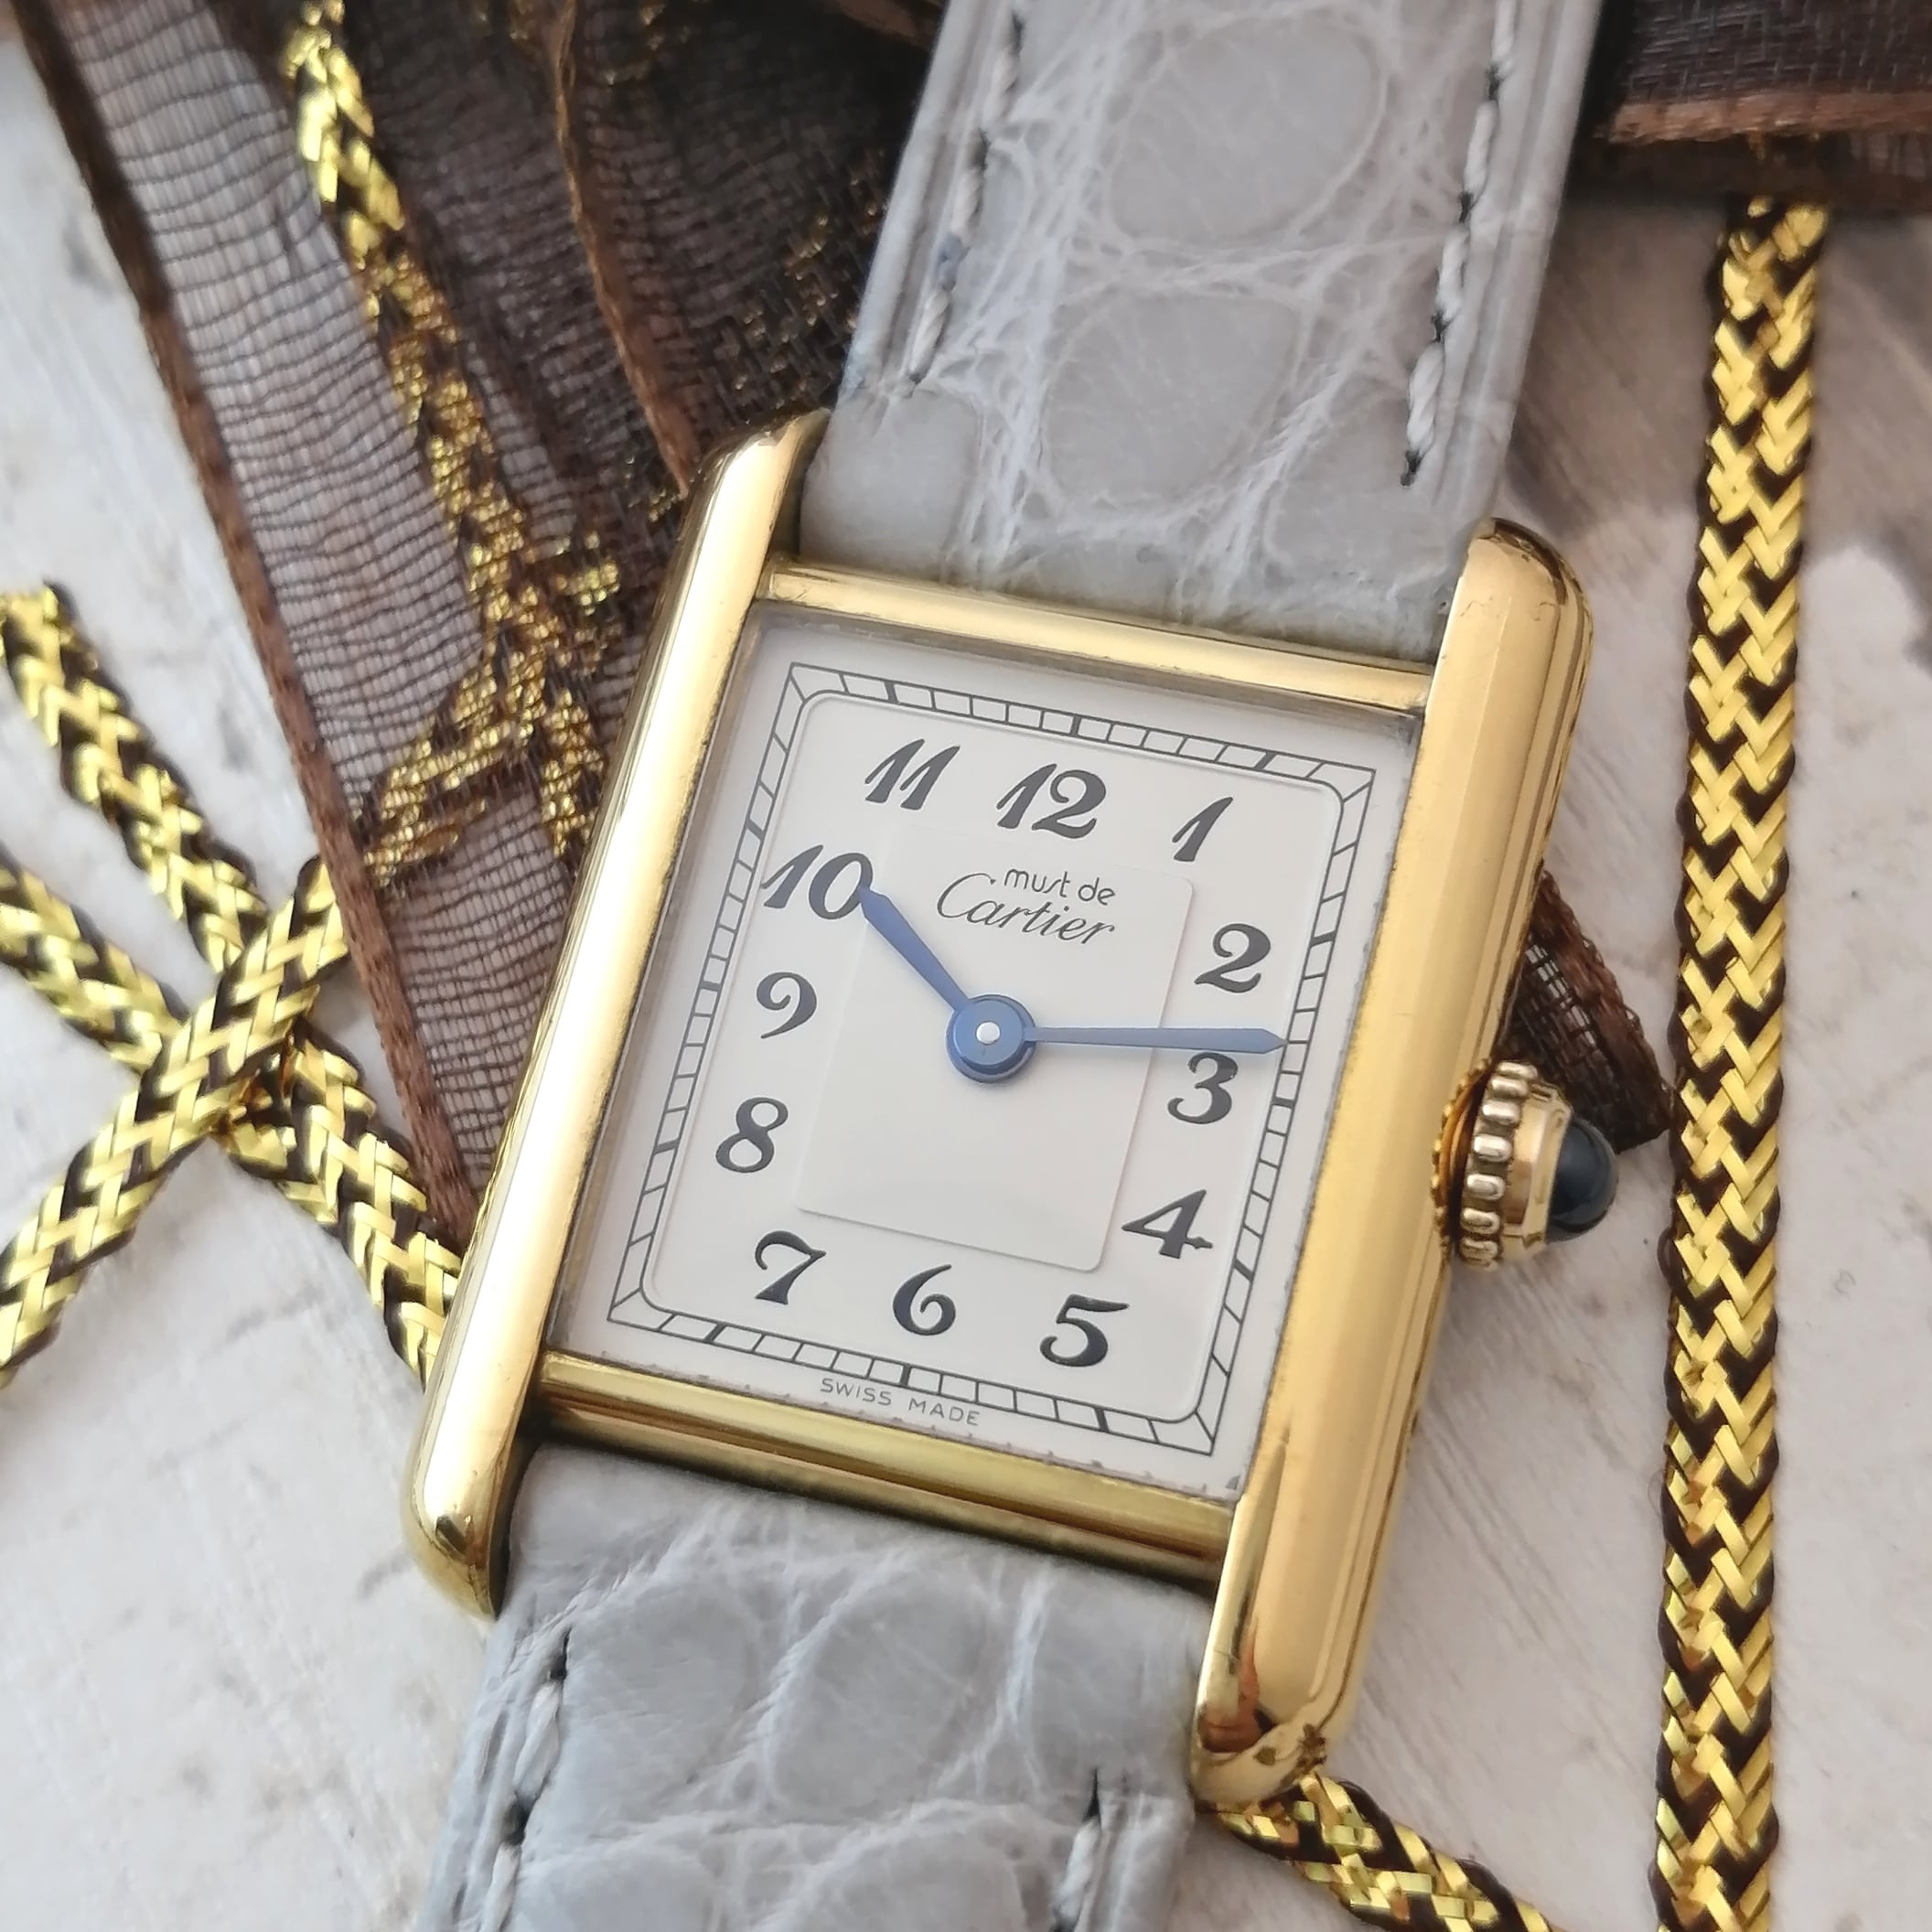 Oh済 Cartier カルティエ タンク Sm 新品ベルト ヴィンテージ 腕時計 Masaco Vintage マサコ ヴィンテージ 腕時計 やアクセサリーのお店